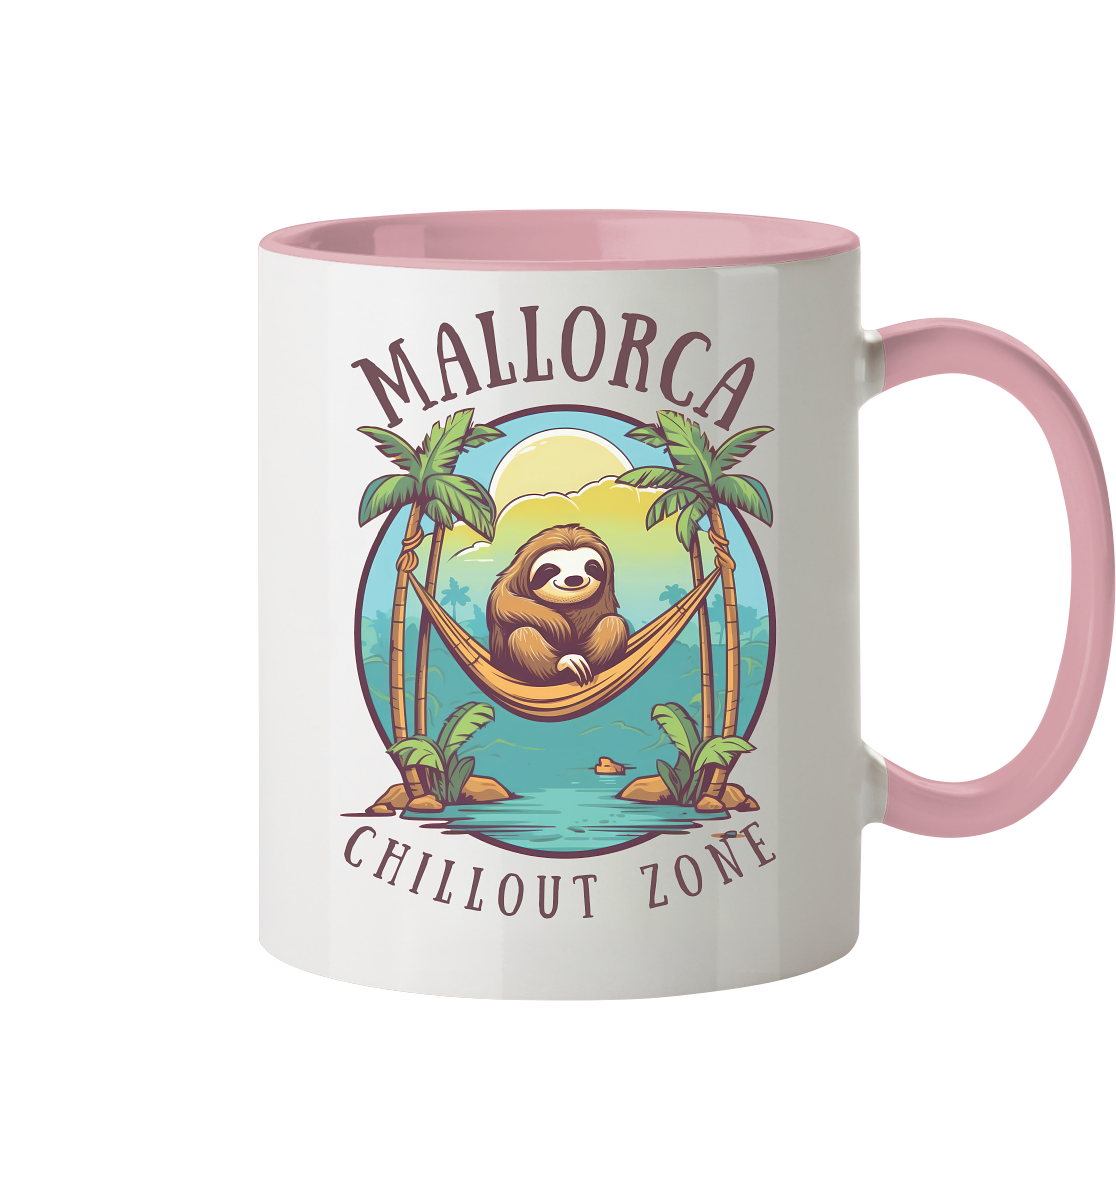 Mallorca Chillout Zone • Tasse zweifarbig